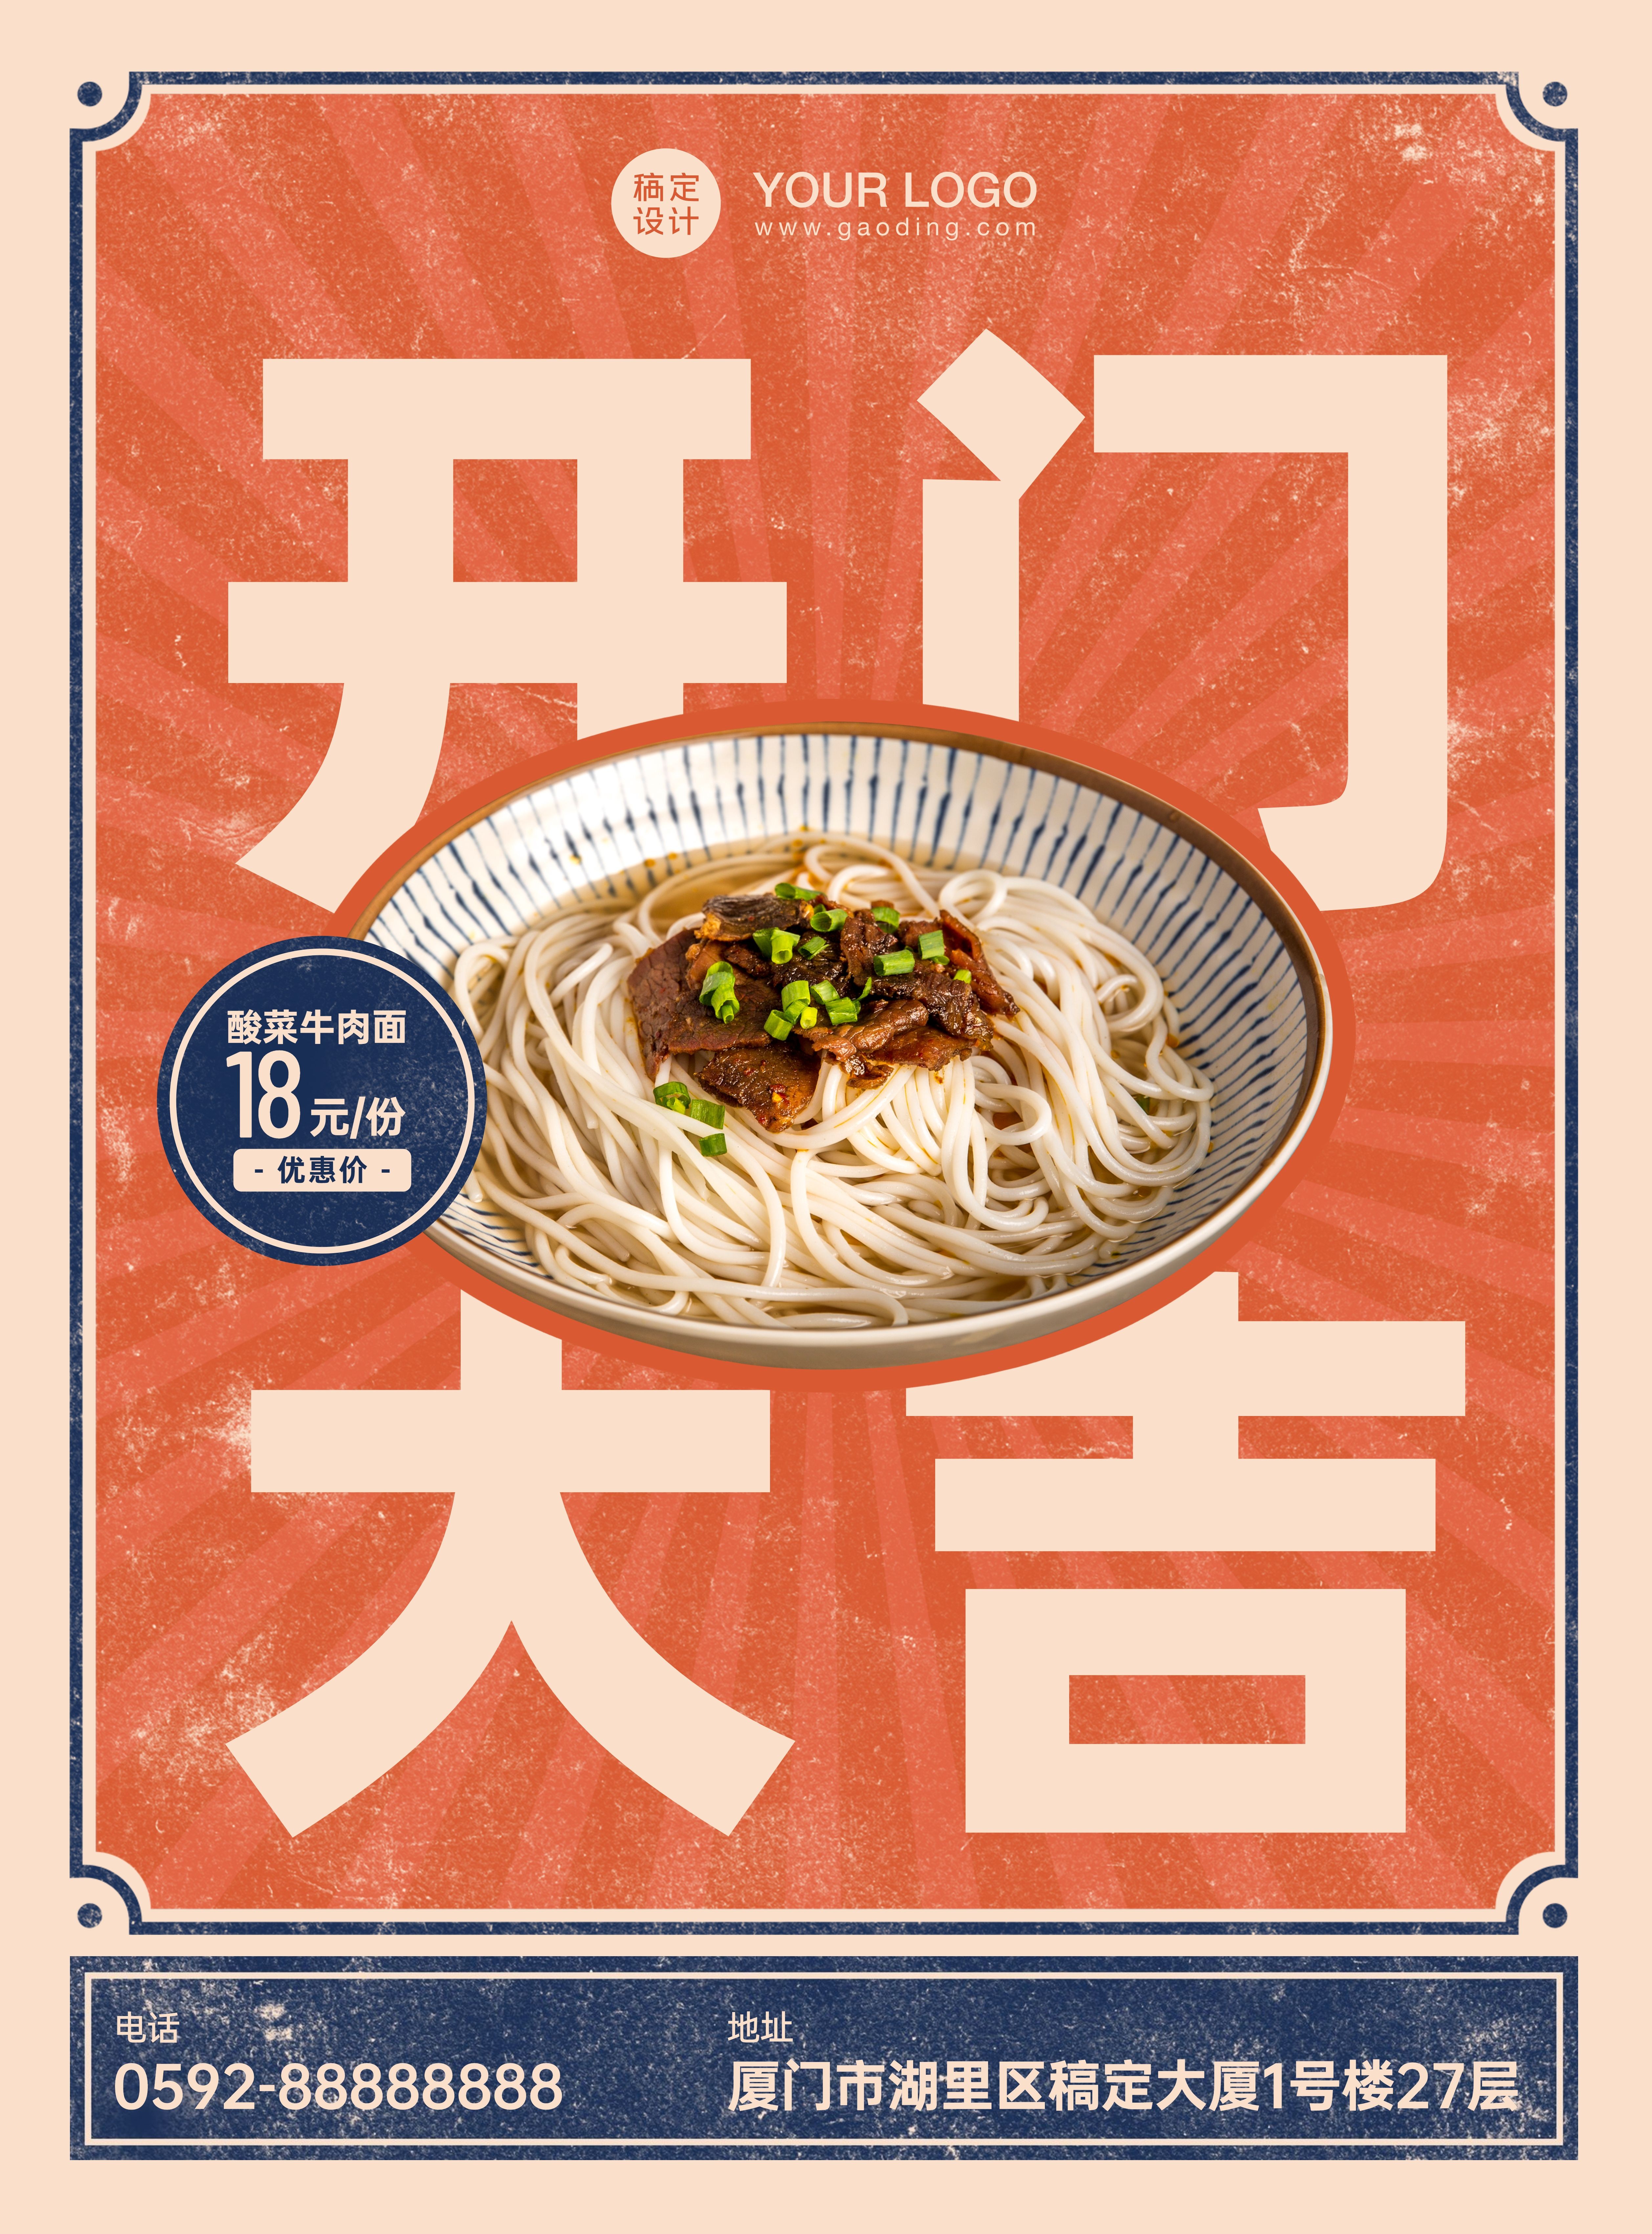 中式汤面开业活动张贴海报预览效果